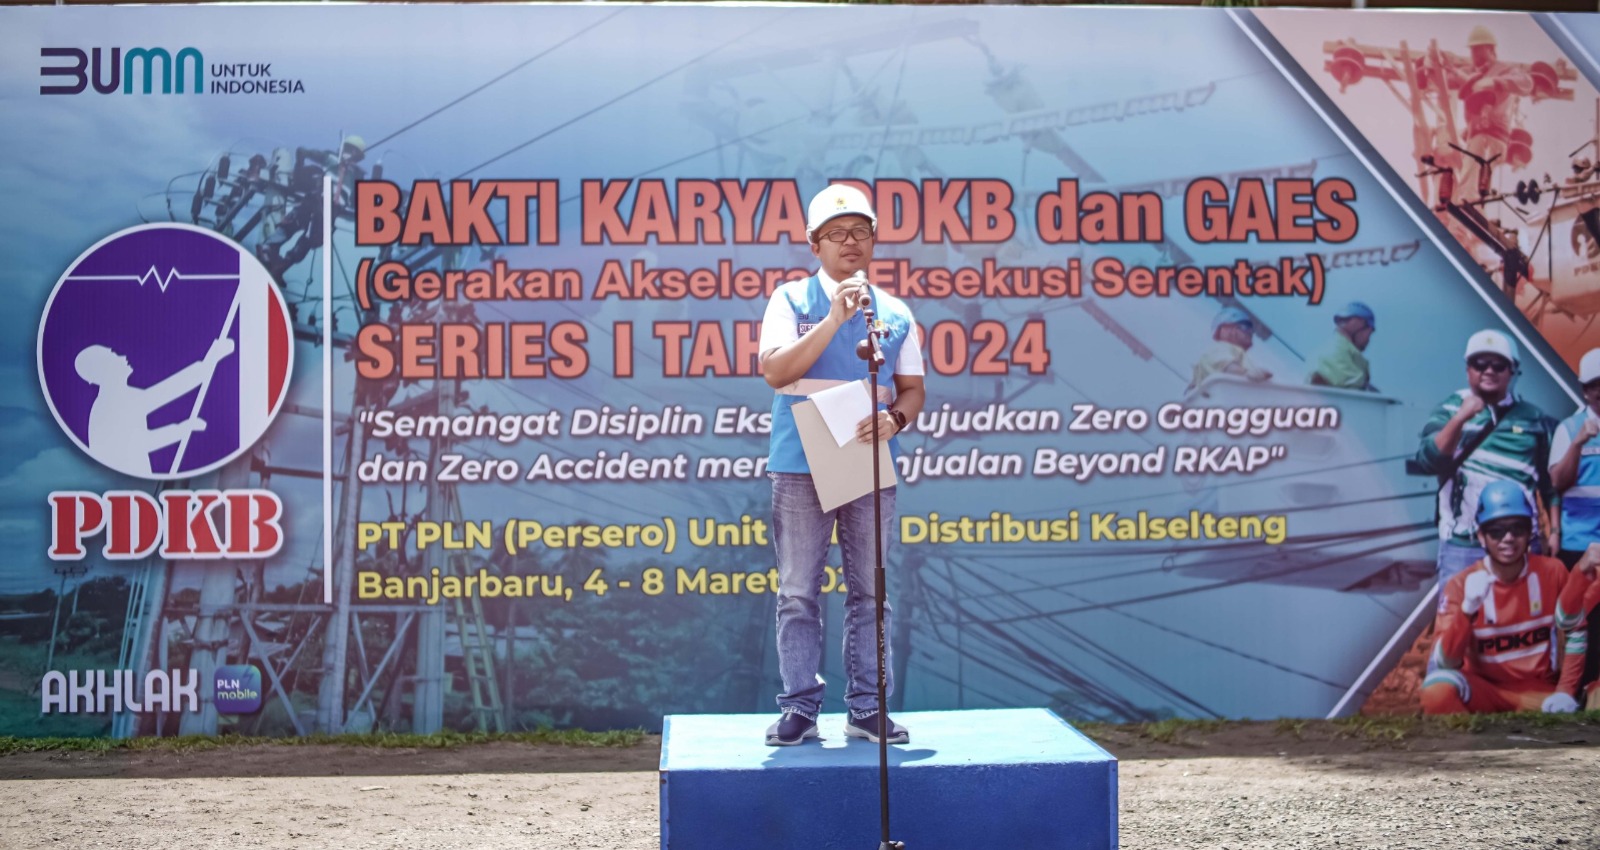 Senior Manager Distribusi Sugeng Hidayat saat membuka kegiatan Apel Pembukaan GAES dan Bakti PDKB Series 1 Tahun 2024 di Banjarbaru.